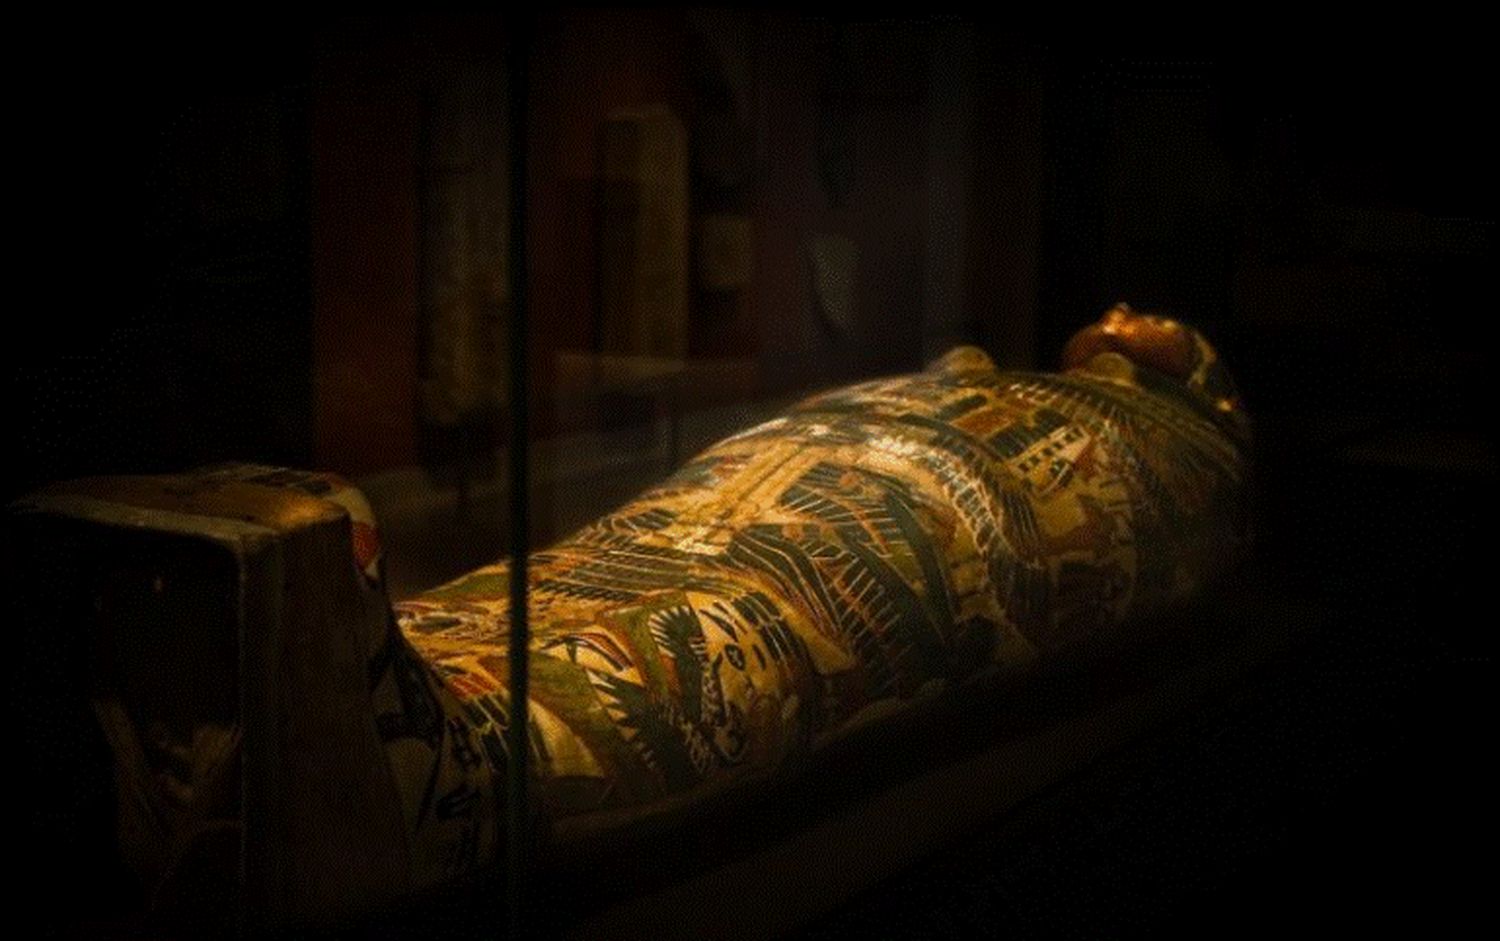 Descoperire uluitoare. Arheologii au scos la lumină una dintre cele mai vechi mumii din Egipt. Are 4300 de ani și e acoperită cu aur